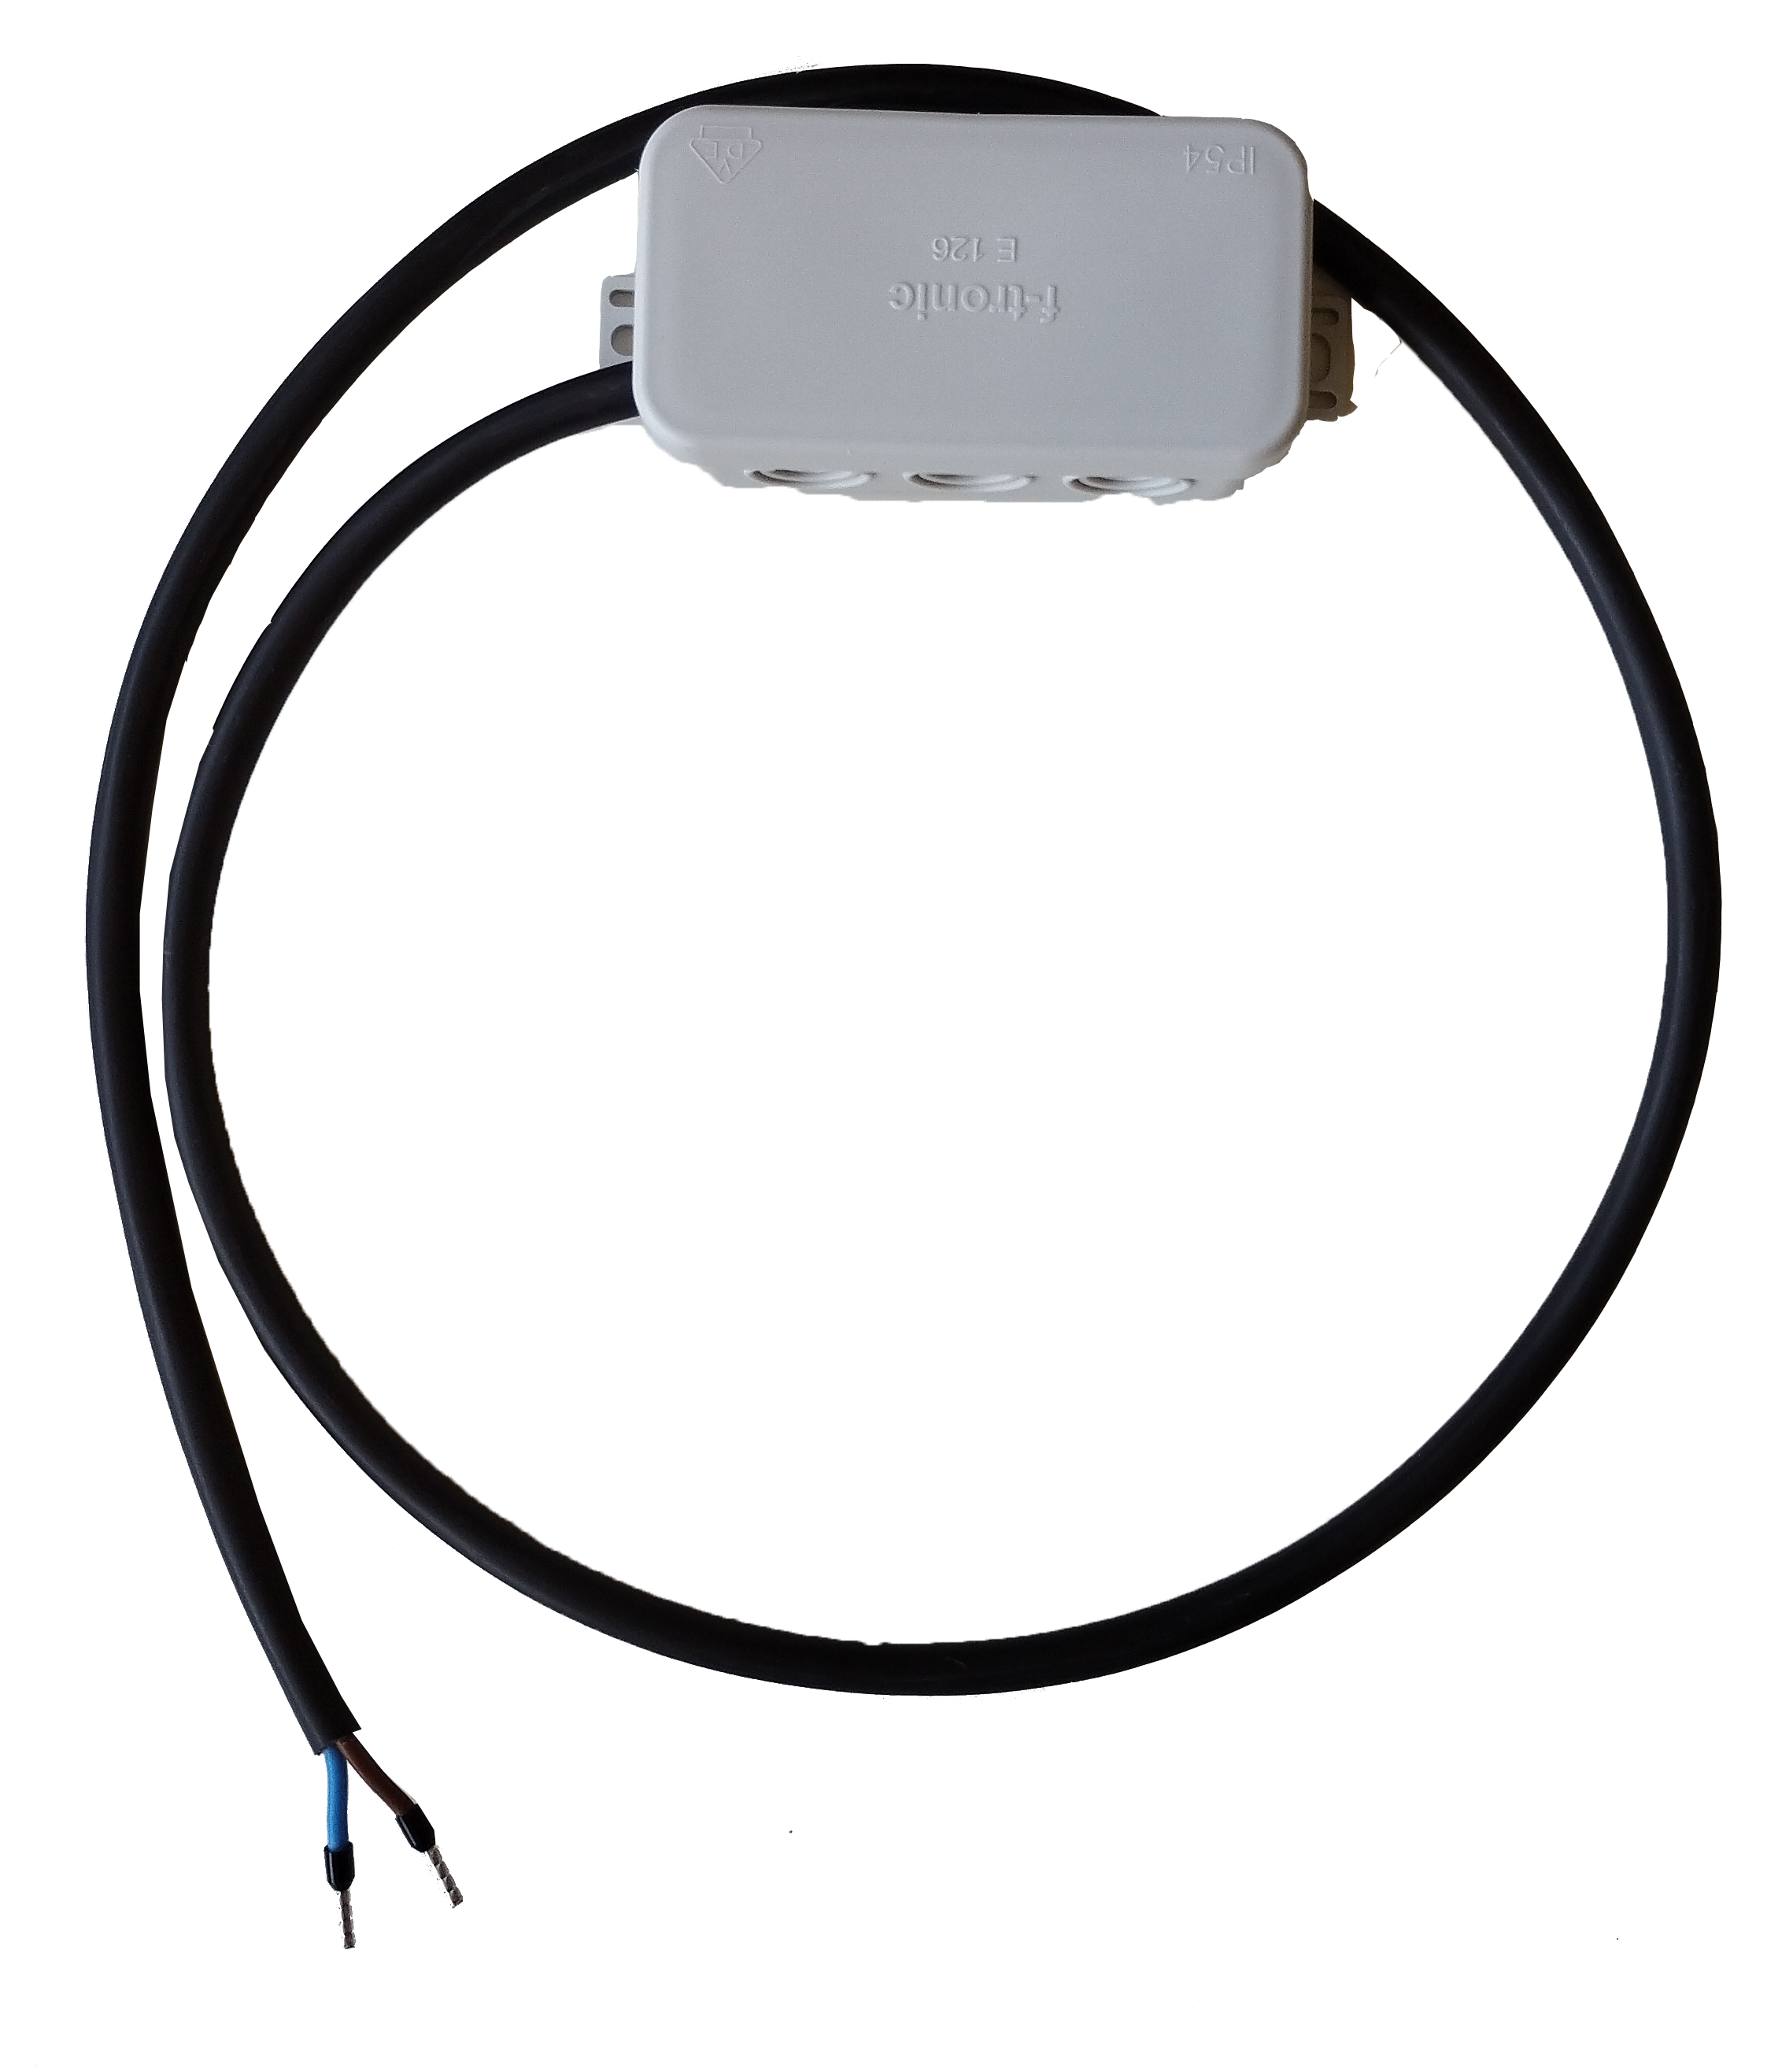 LED-Treiber Anschlussset, 100 cm, 2x0.75mm², Abzweig-Dose, WAGO Klemmen